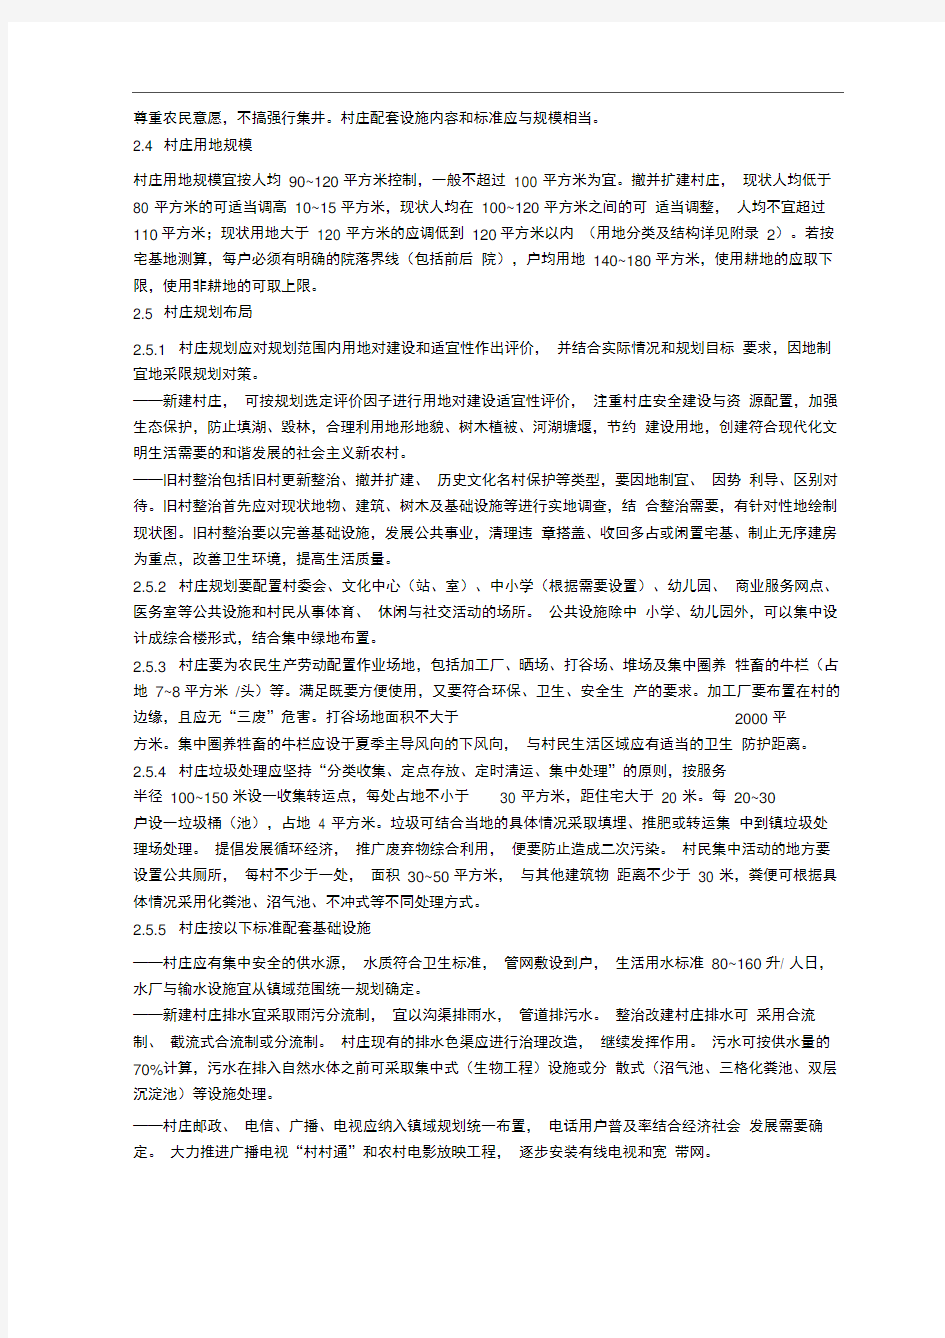 1.湖北省新农村建设村庄规划编制技术导则